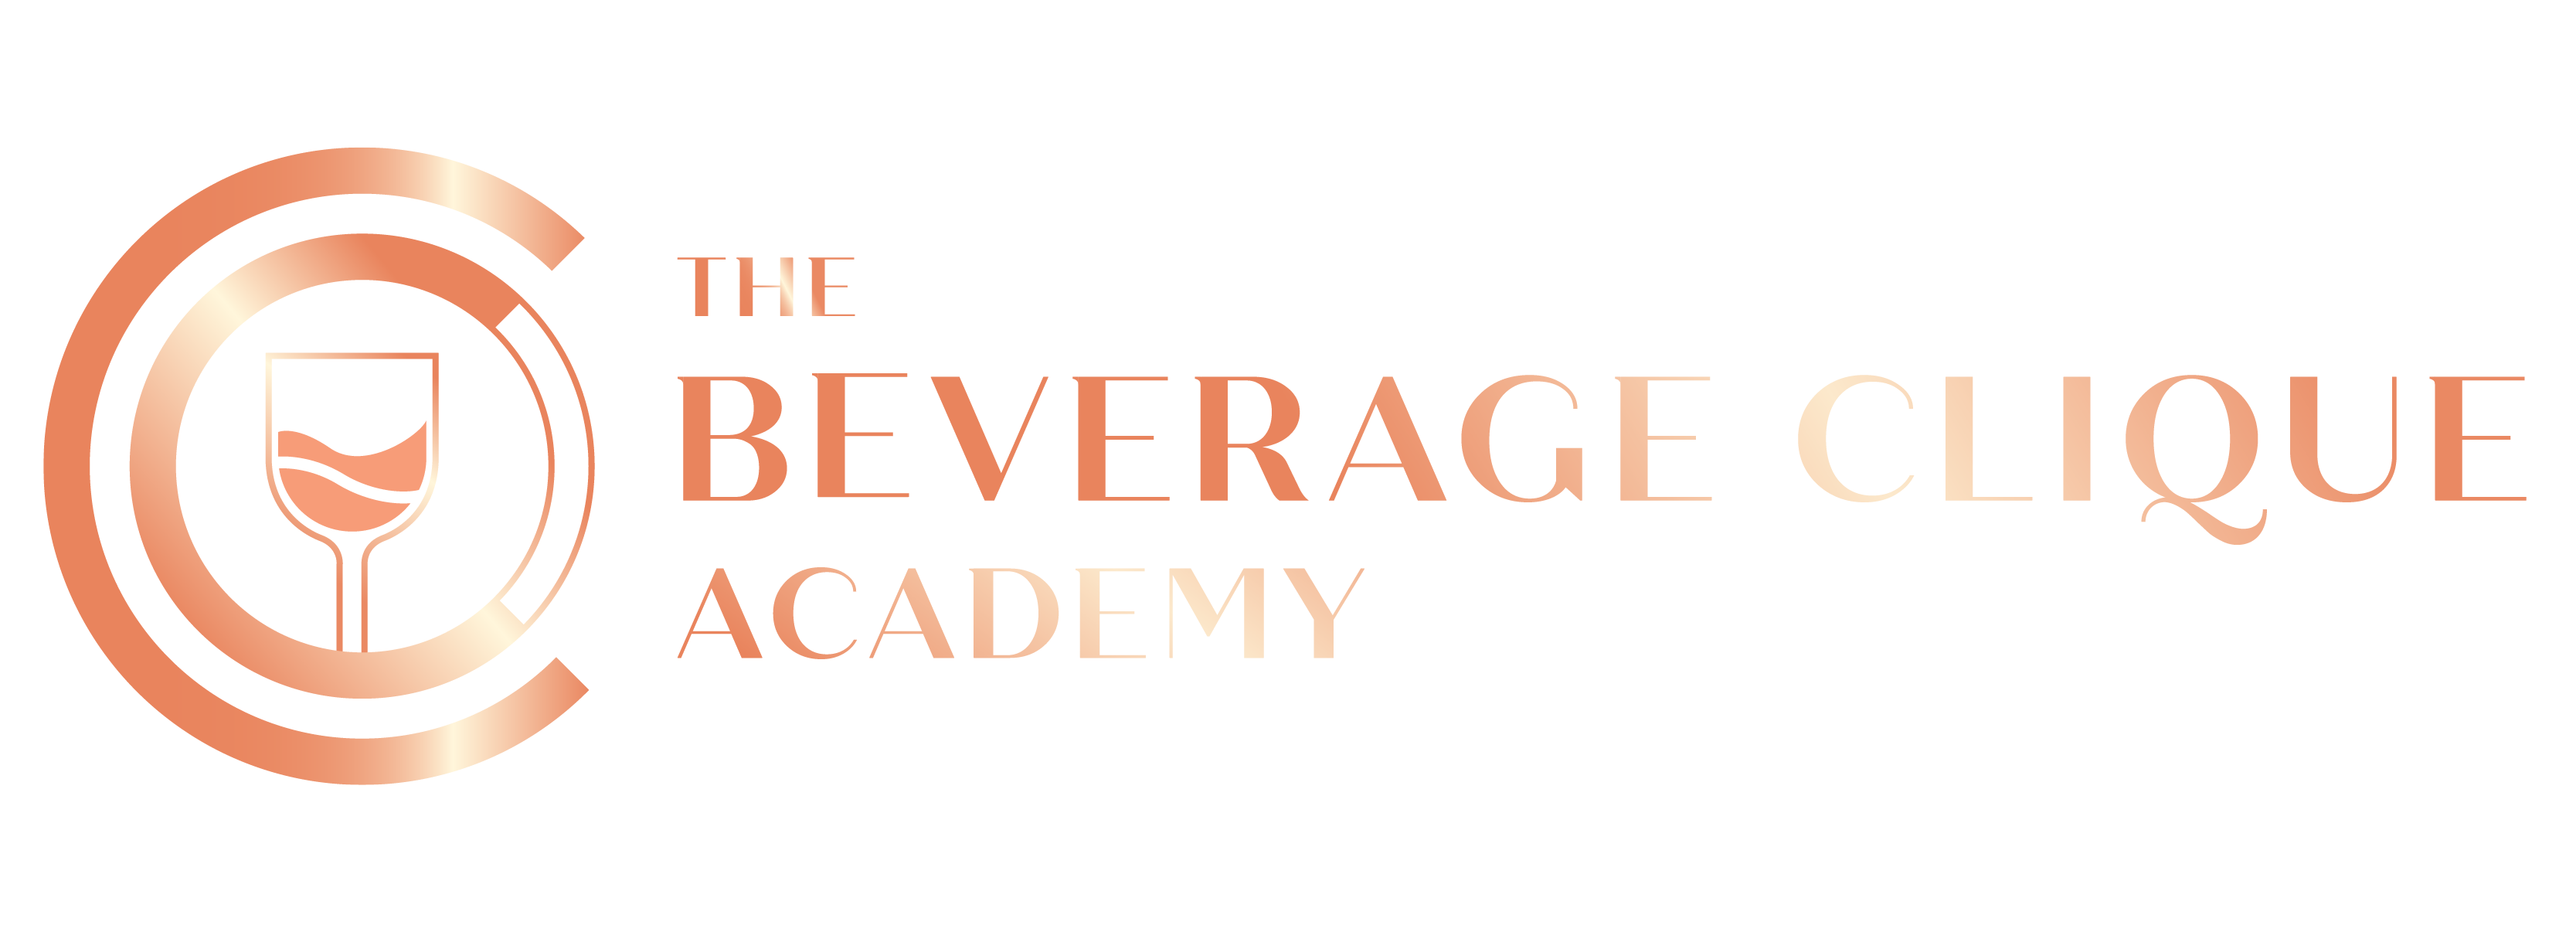 The Beverage Clique Academy Logo